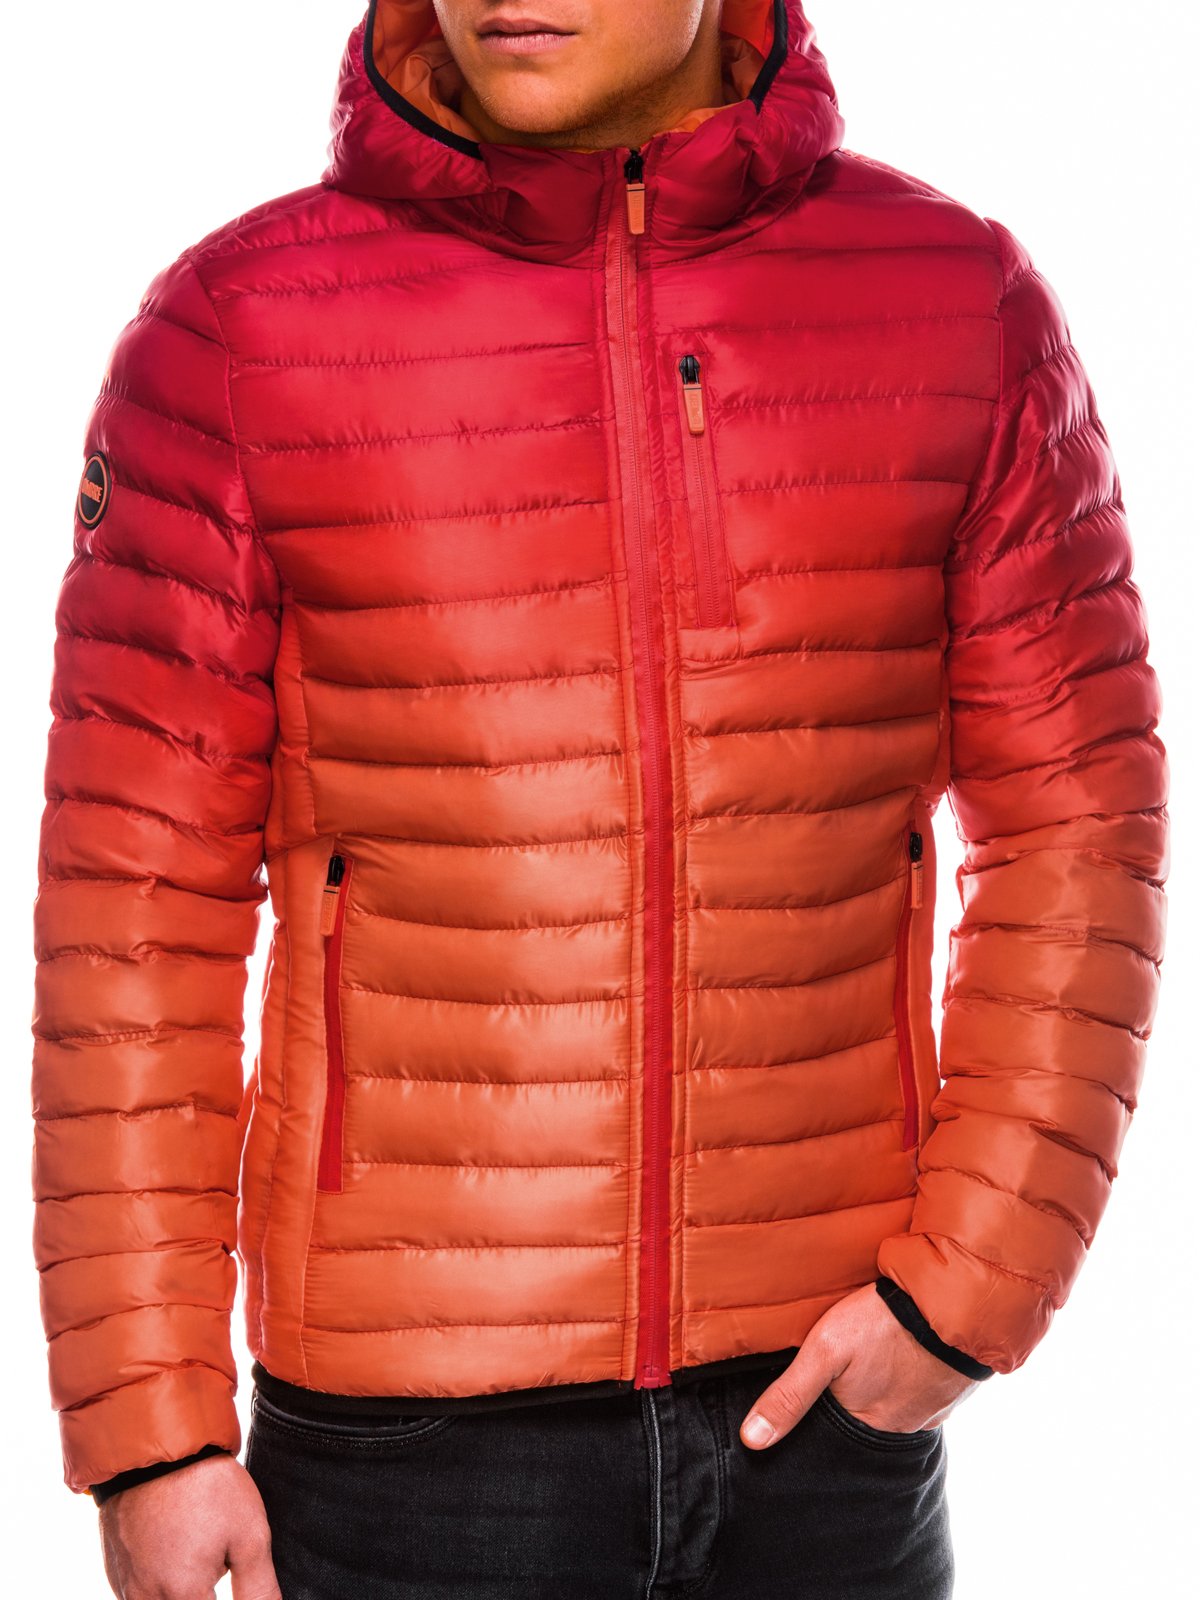 Jacheta matlasata de toamna barbati C319 - rosu